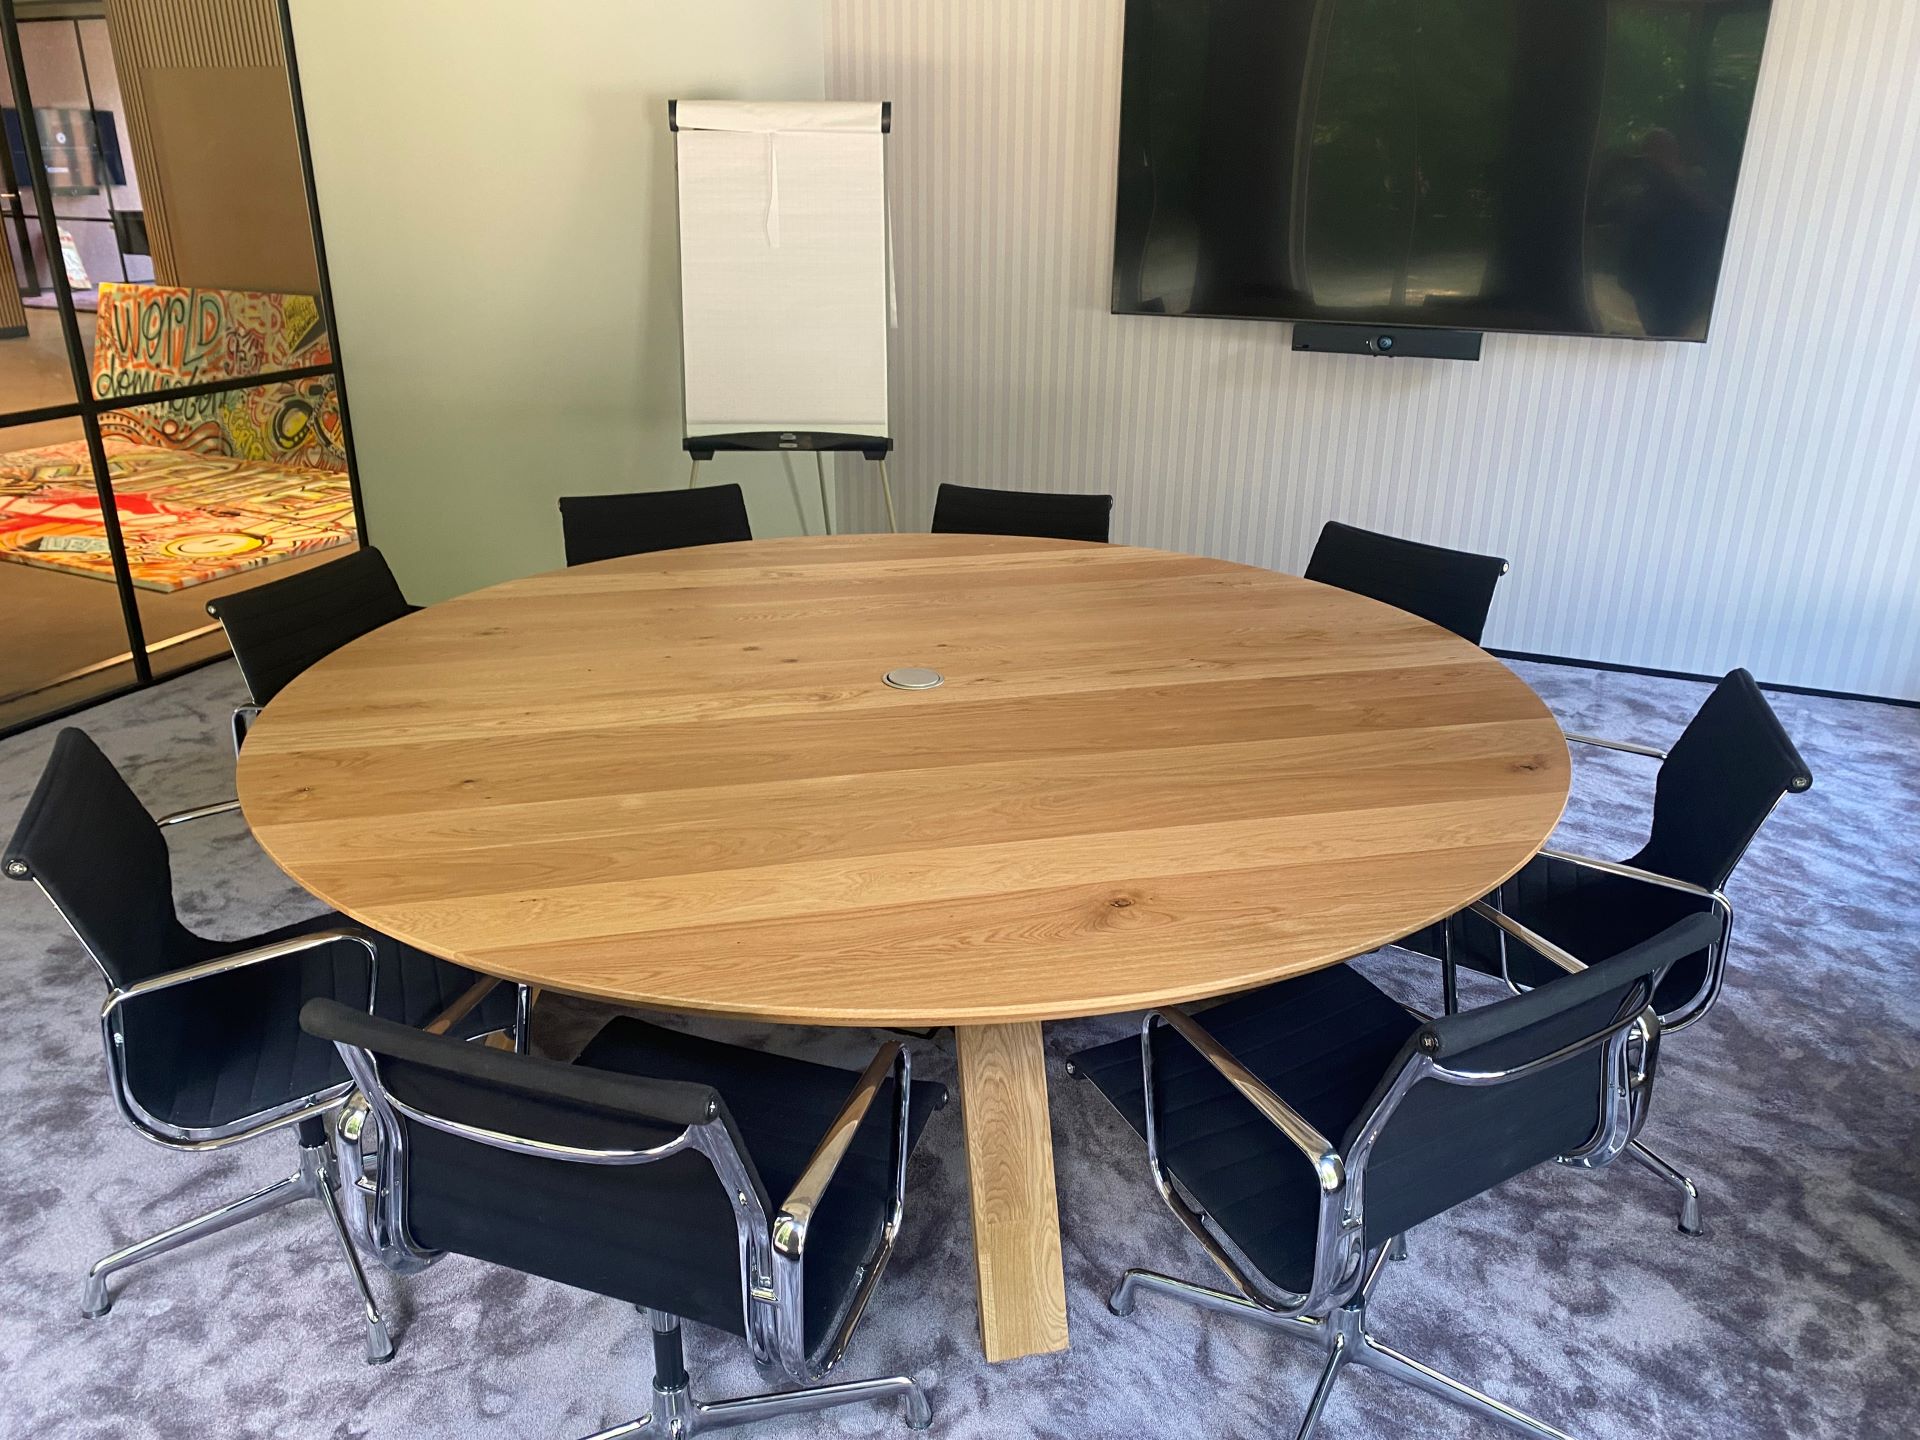 Meeting ruimte met grote ronde tafel